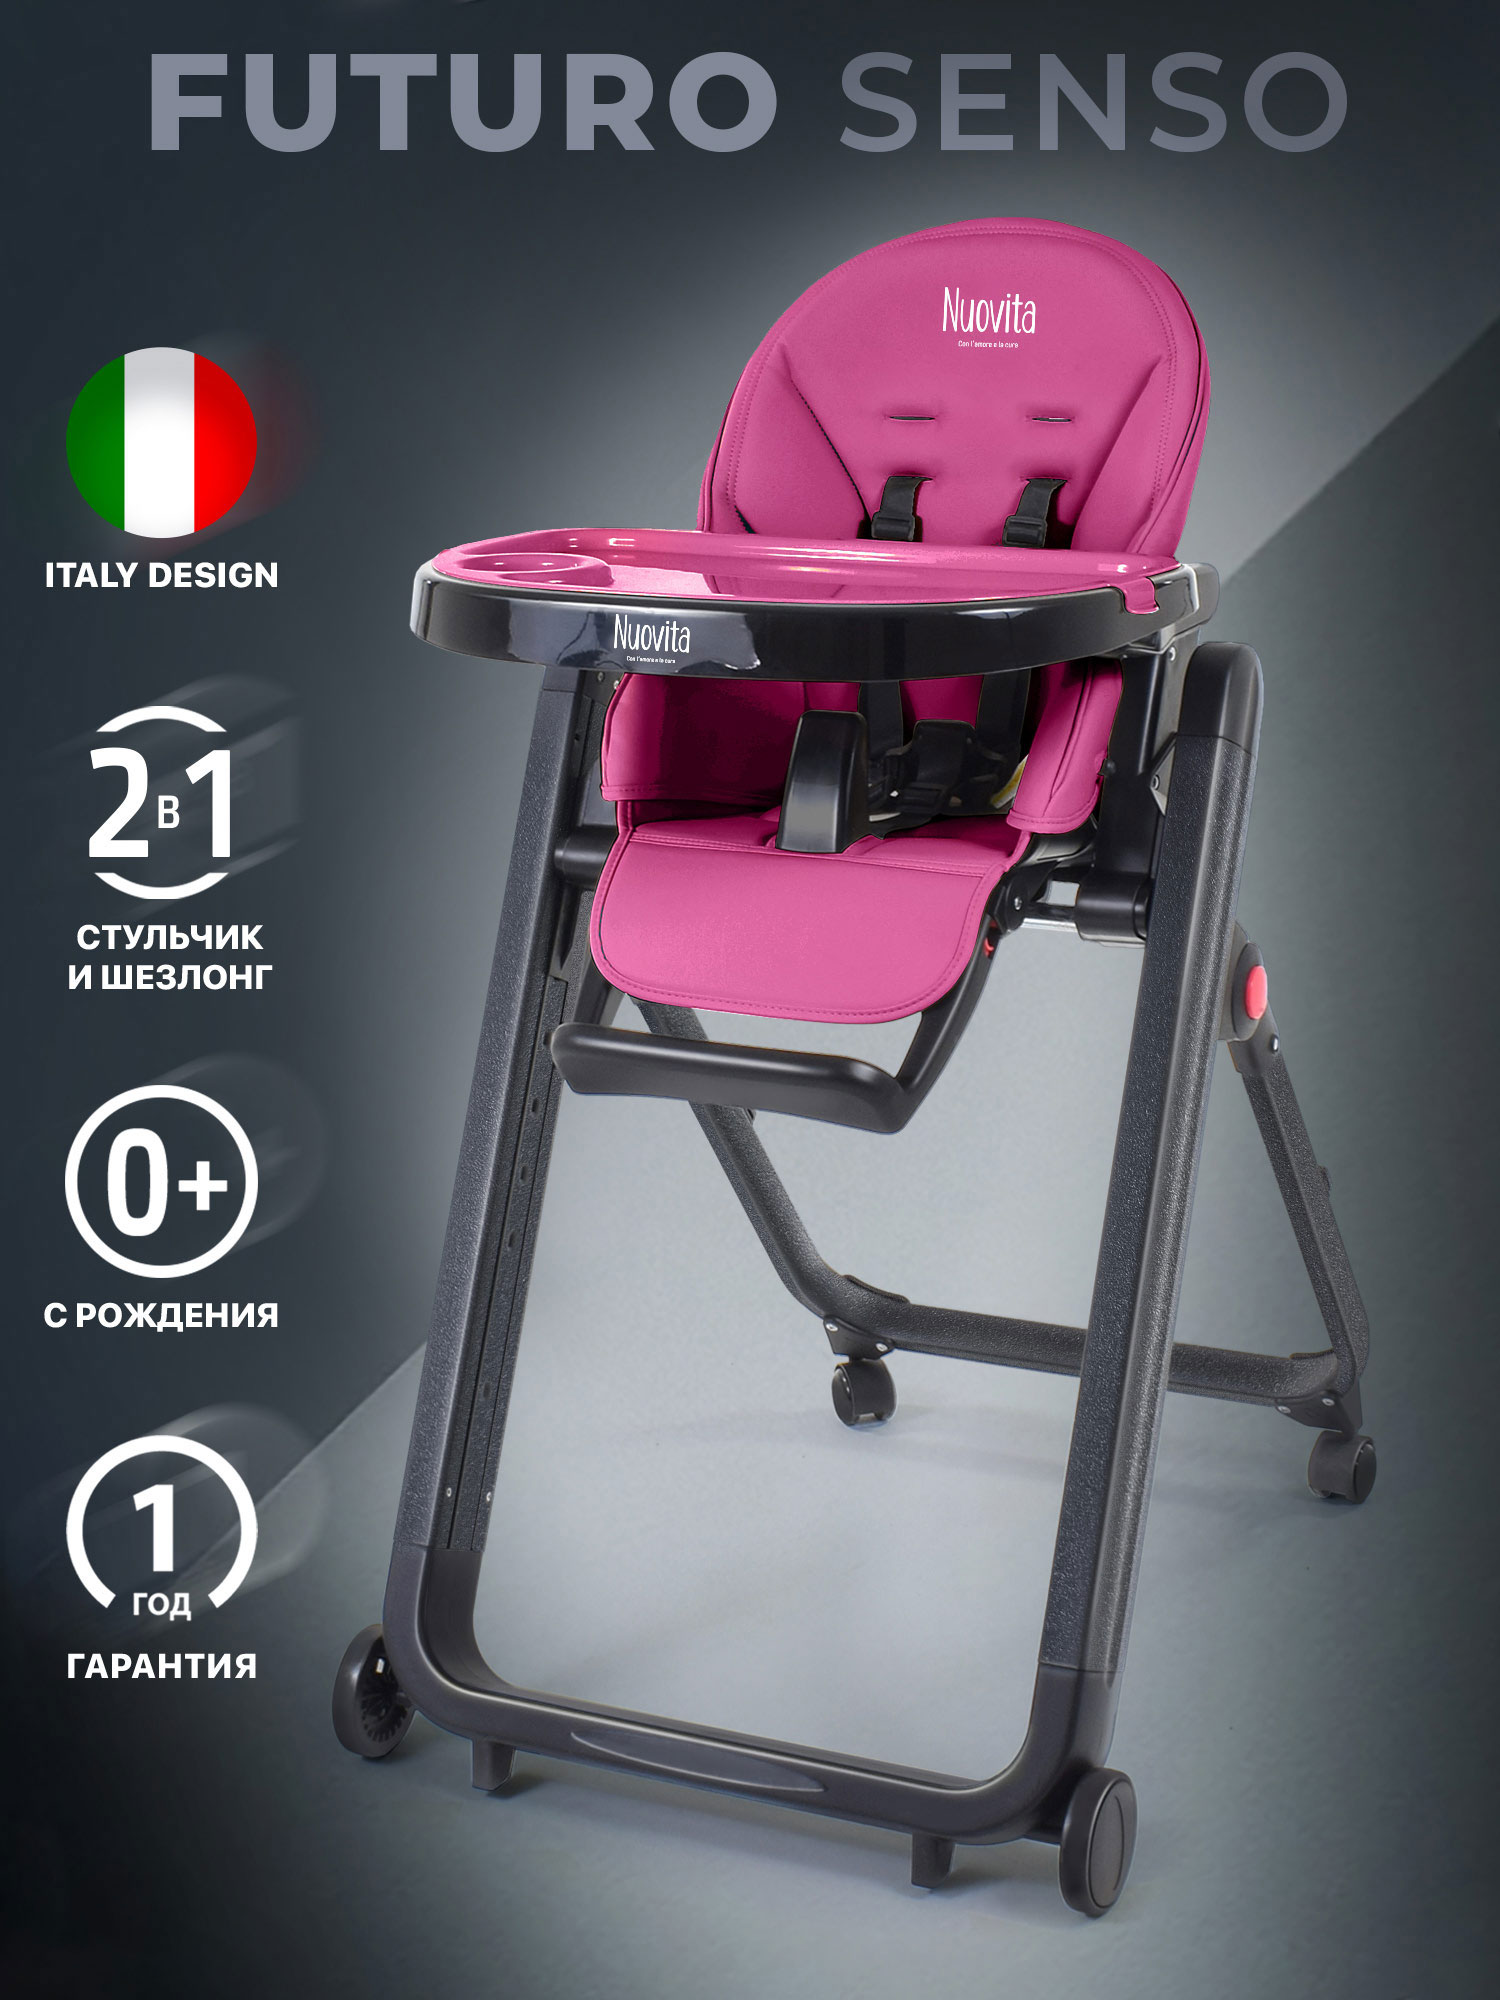 Стульчик для кормления Nuovita Futuro Senso Nero (Magenta/Пурпурный) стульчик для кормления nuovita futuro senso nero marino морской